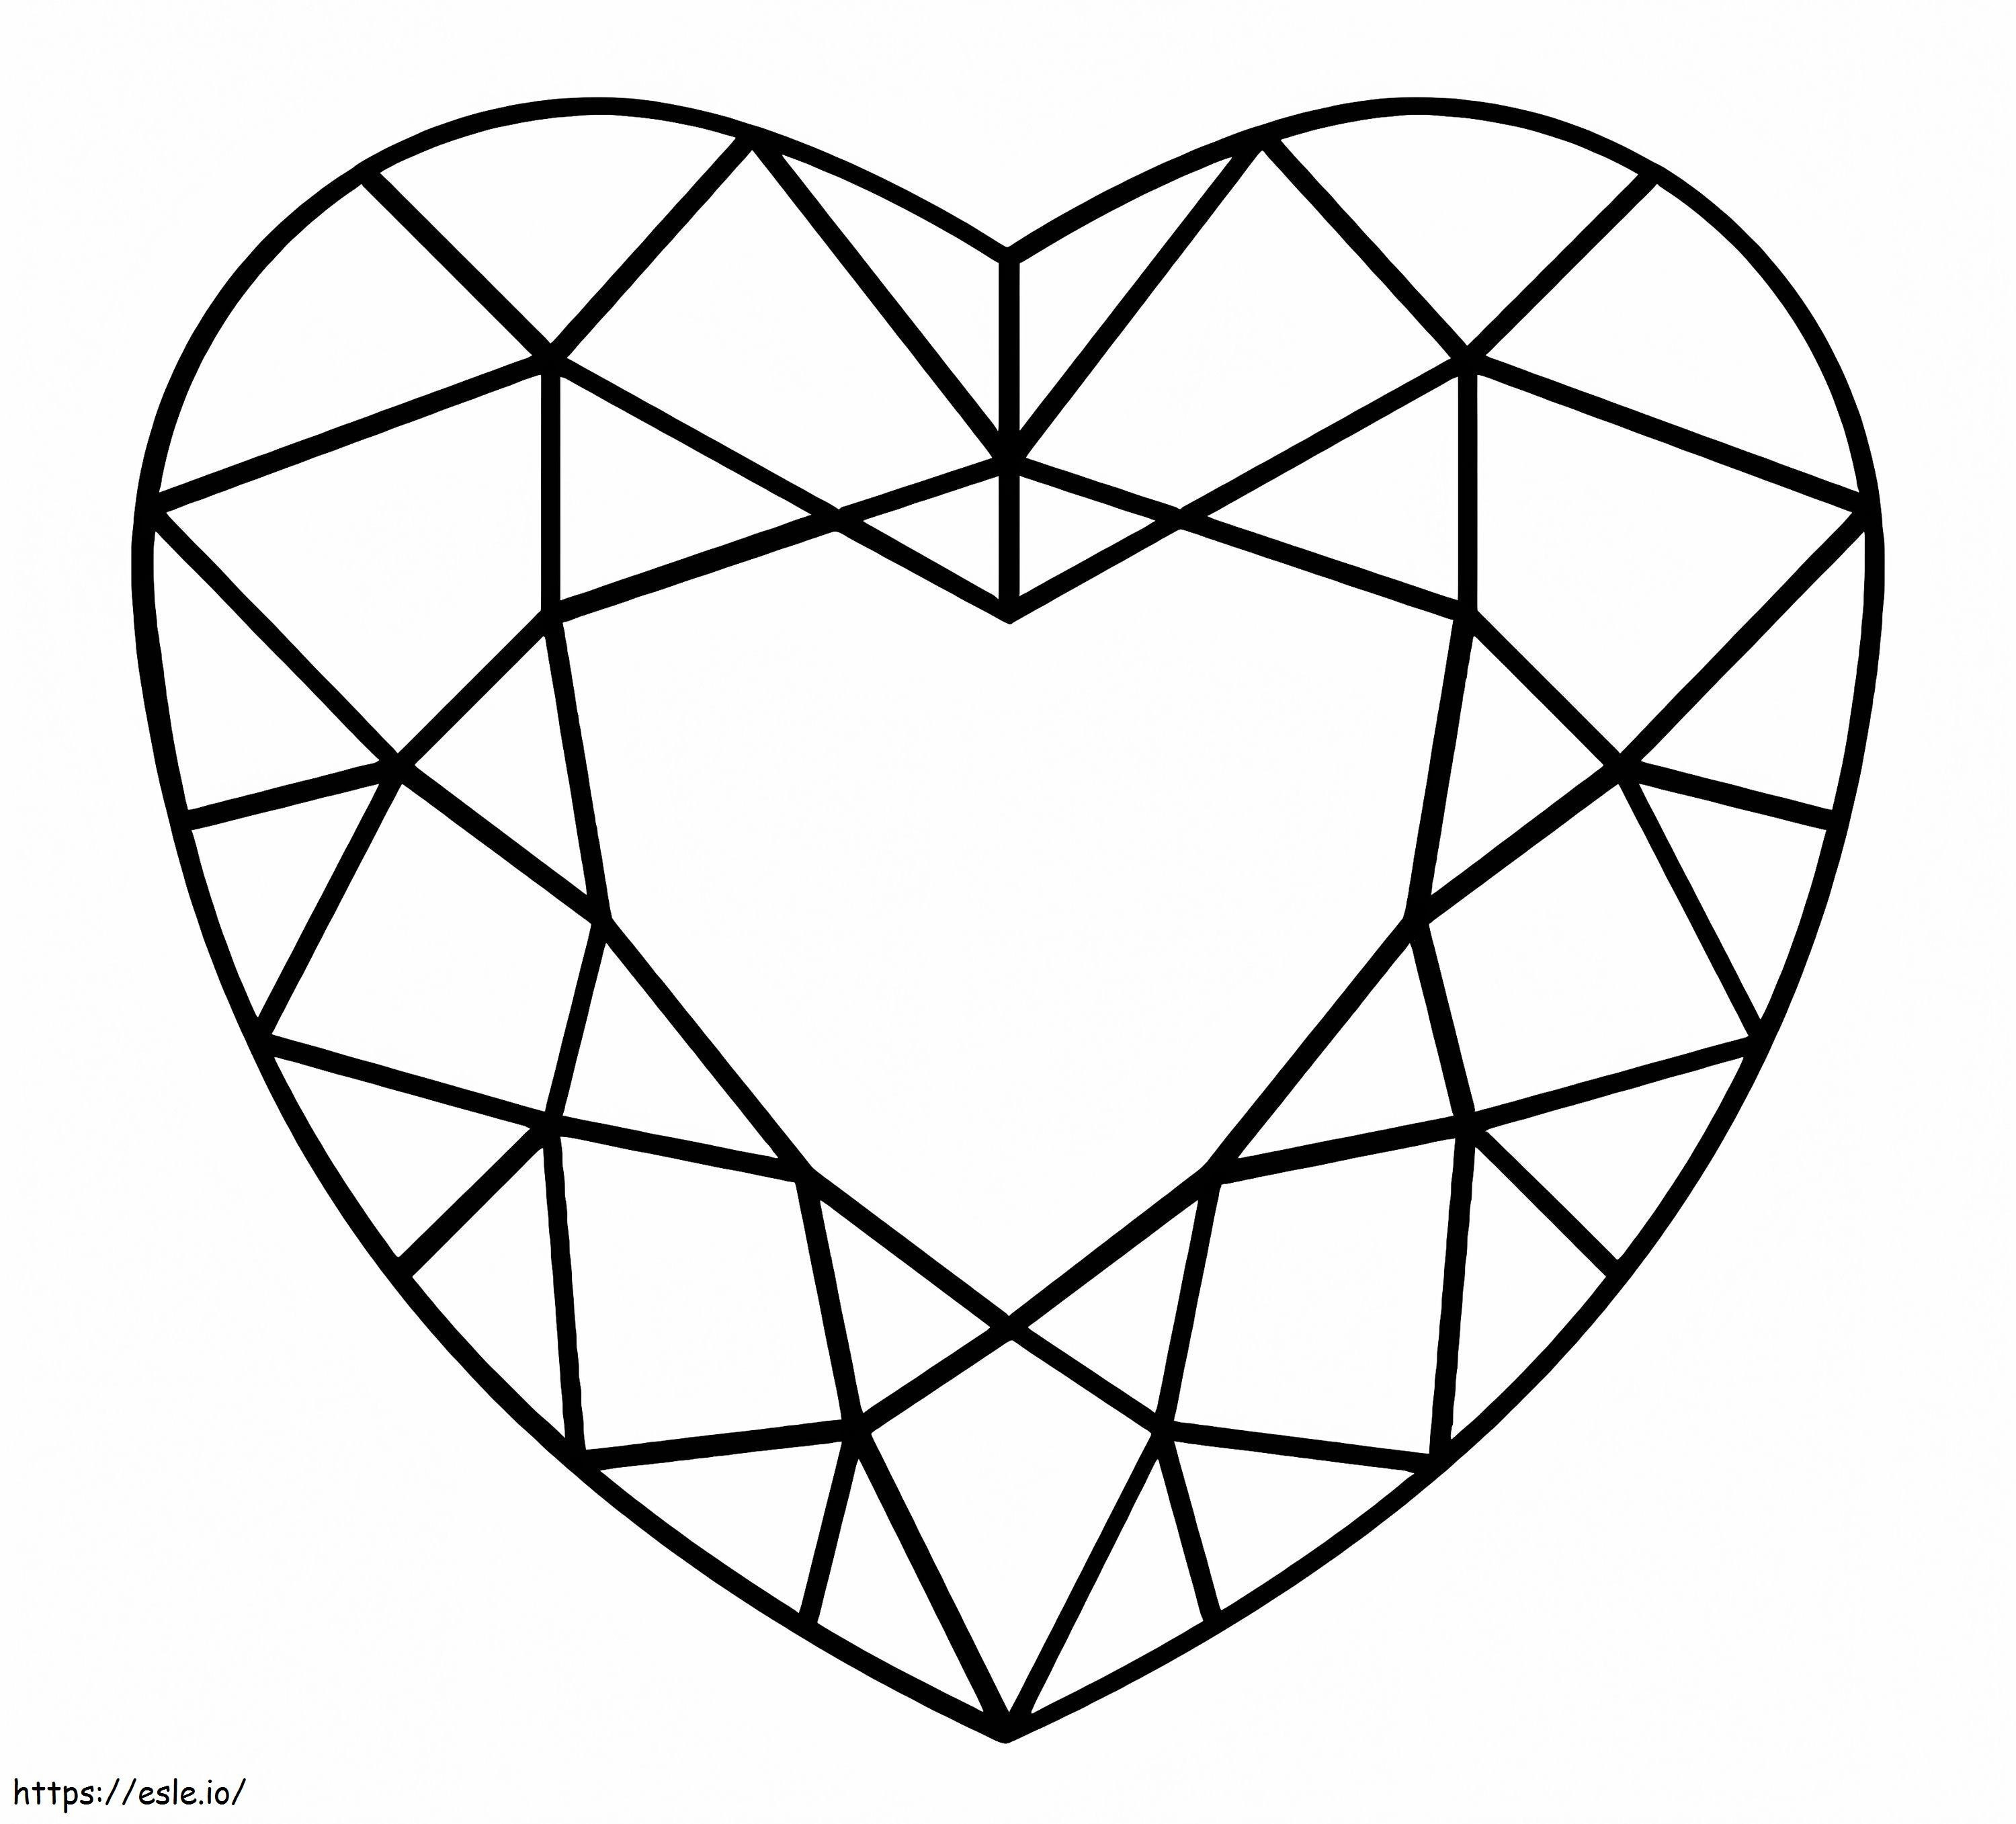 Diament w kształcie serca kolorowanka